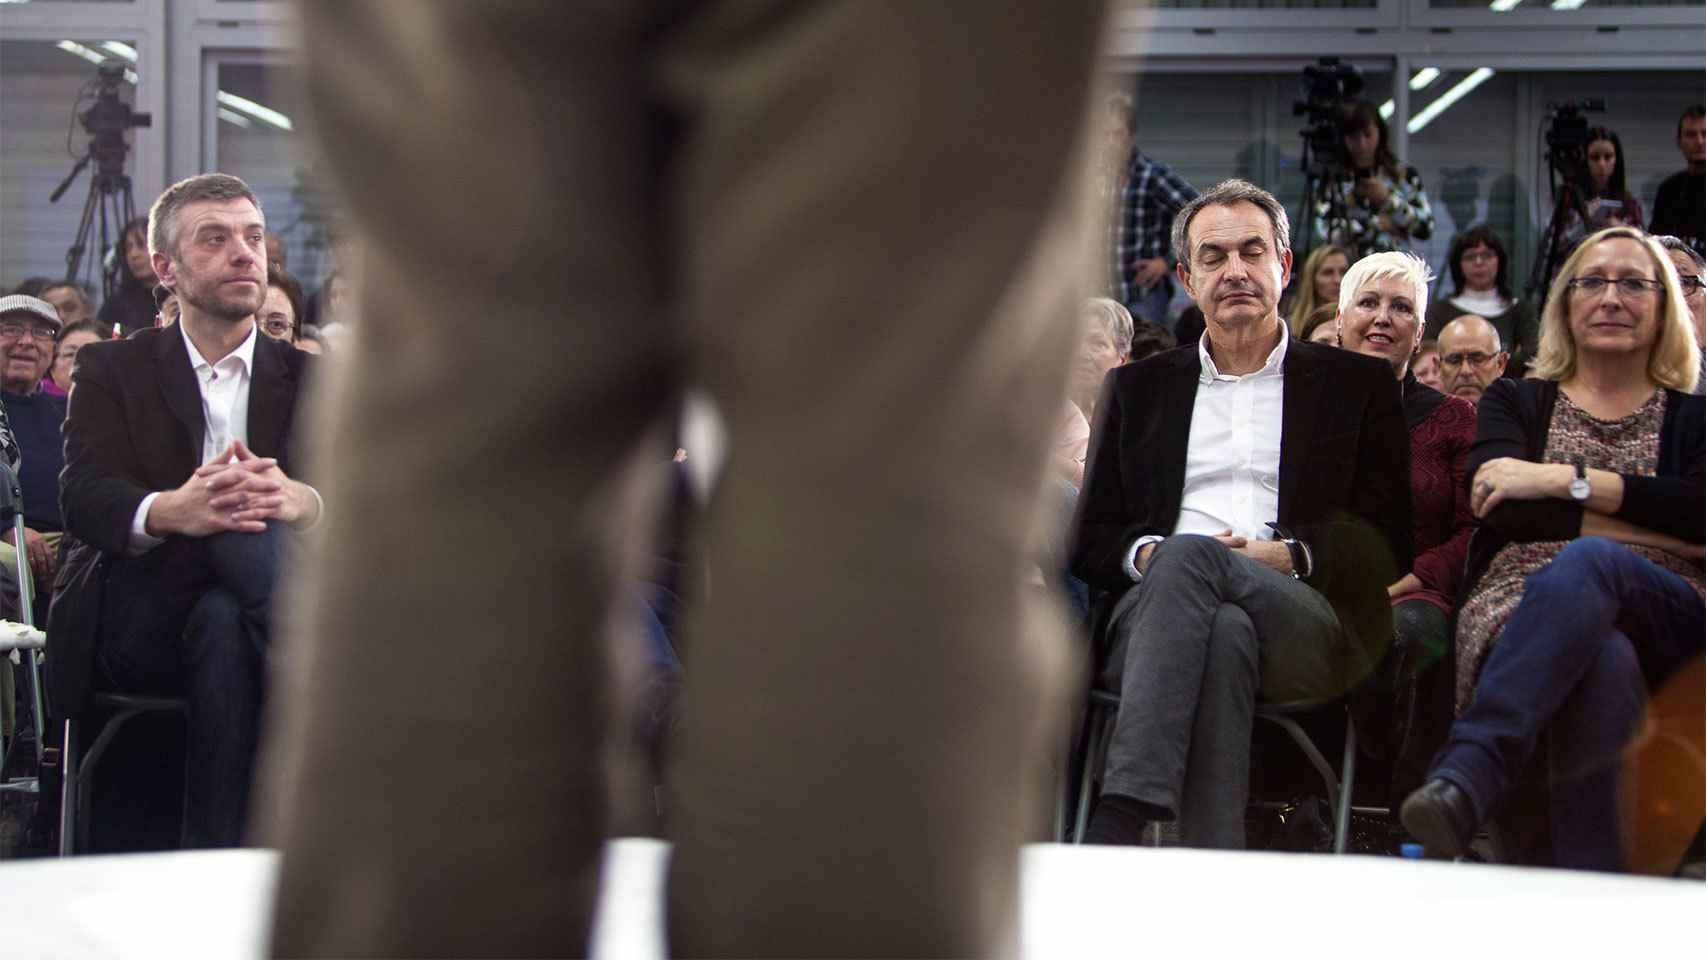 Niega tener jet lag, pero Zapatero cierra a menudo los ojos para relajarse.